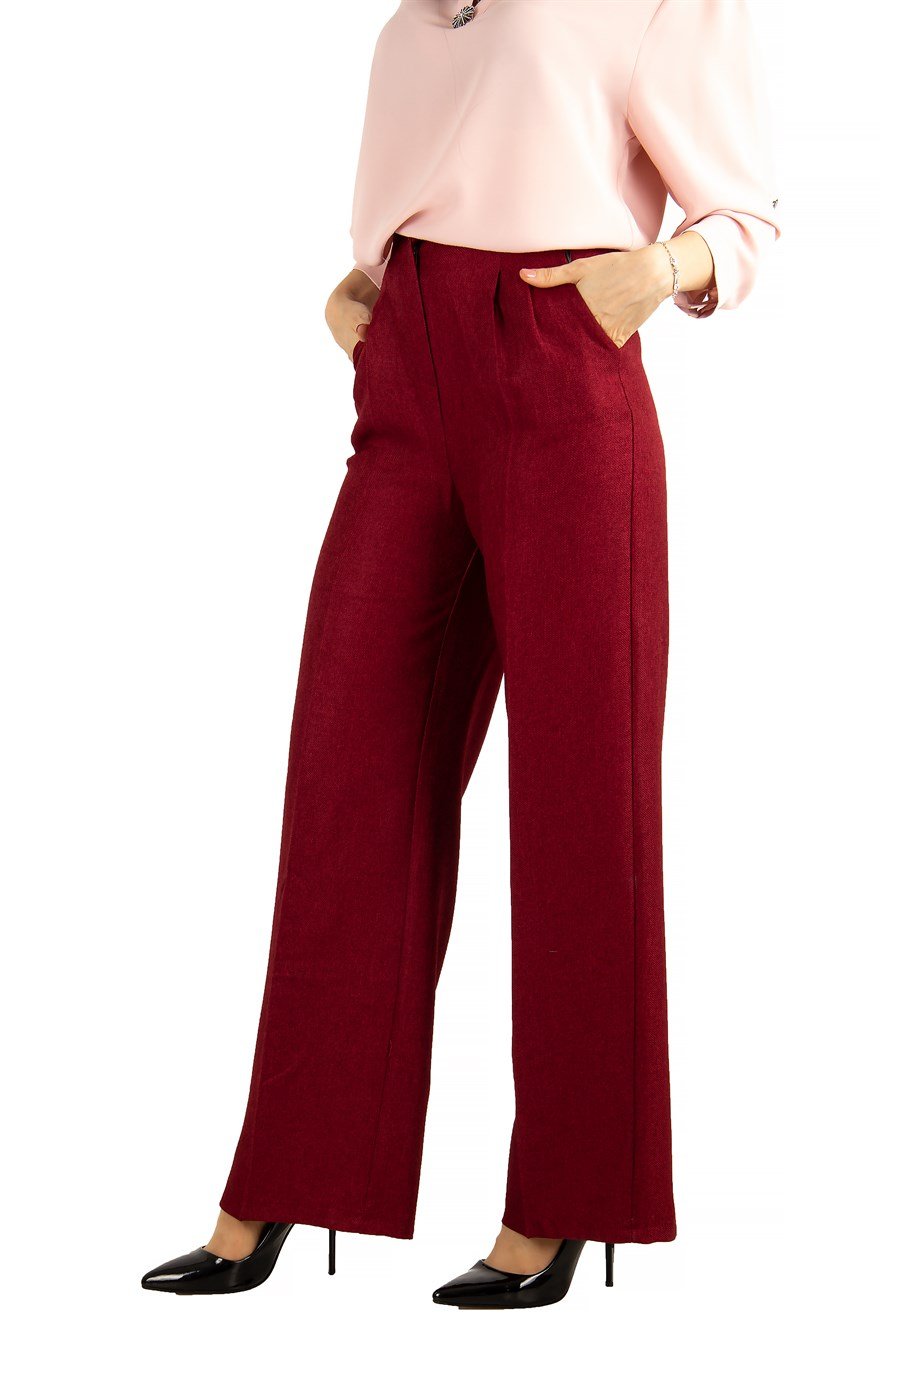 Pantalon Large Classique - Rouge Bordeaux - Vannes